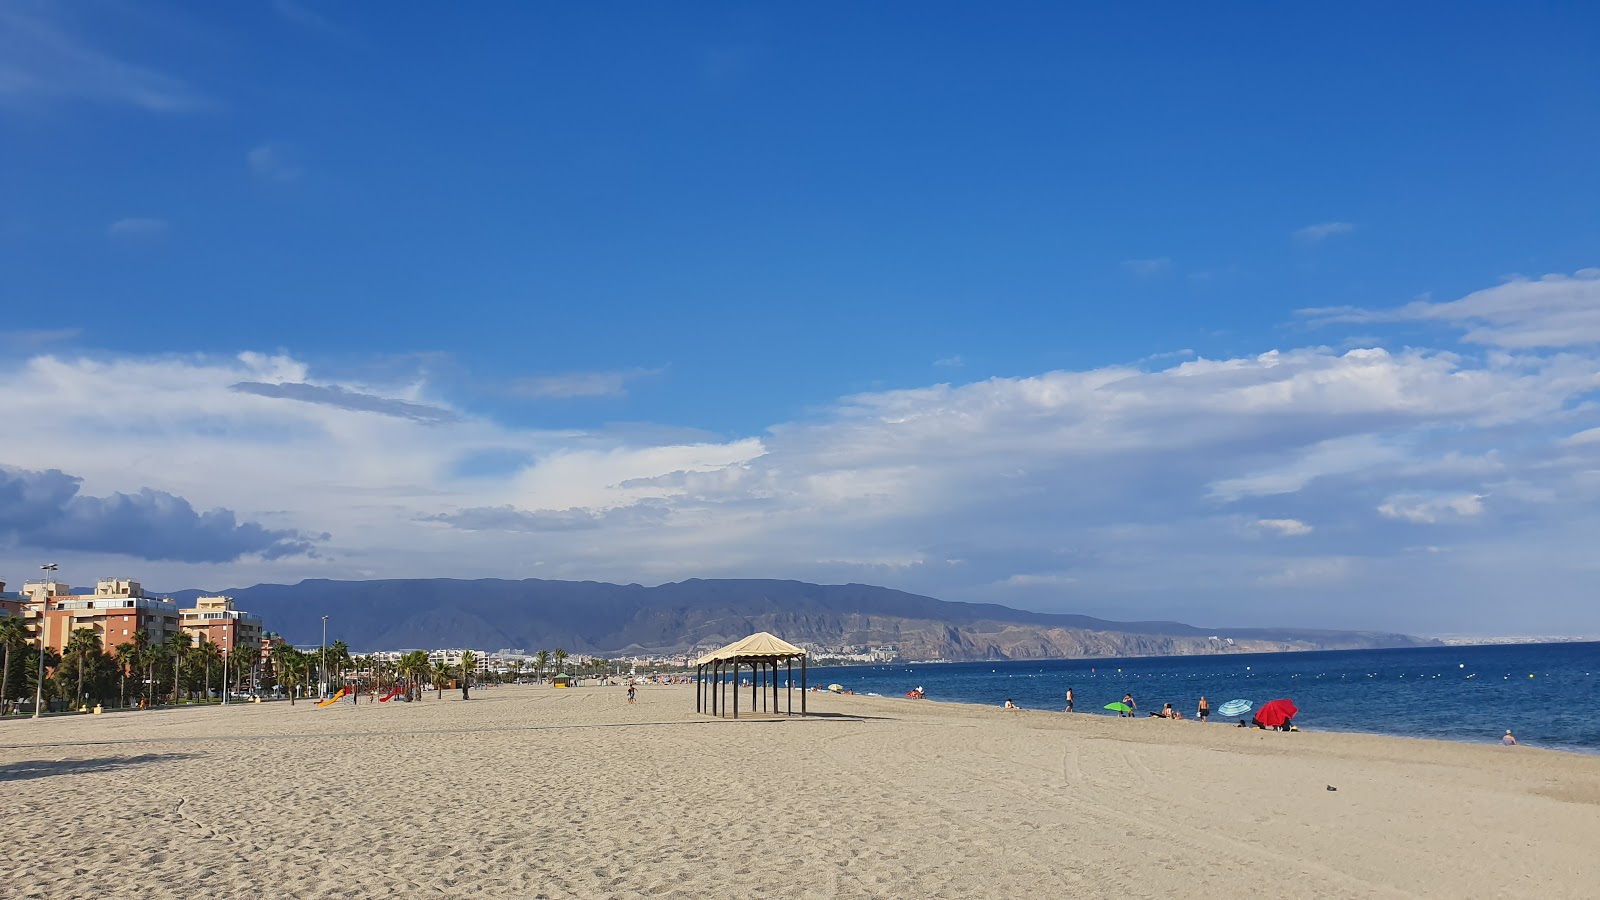 Playa de la Romanilla'in fotoğrafı gri kum yüzey ile